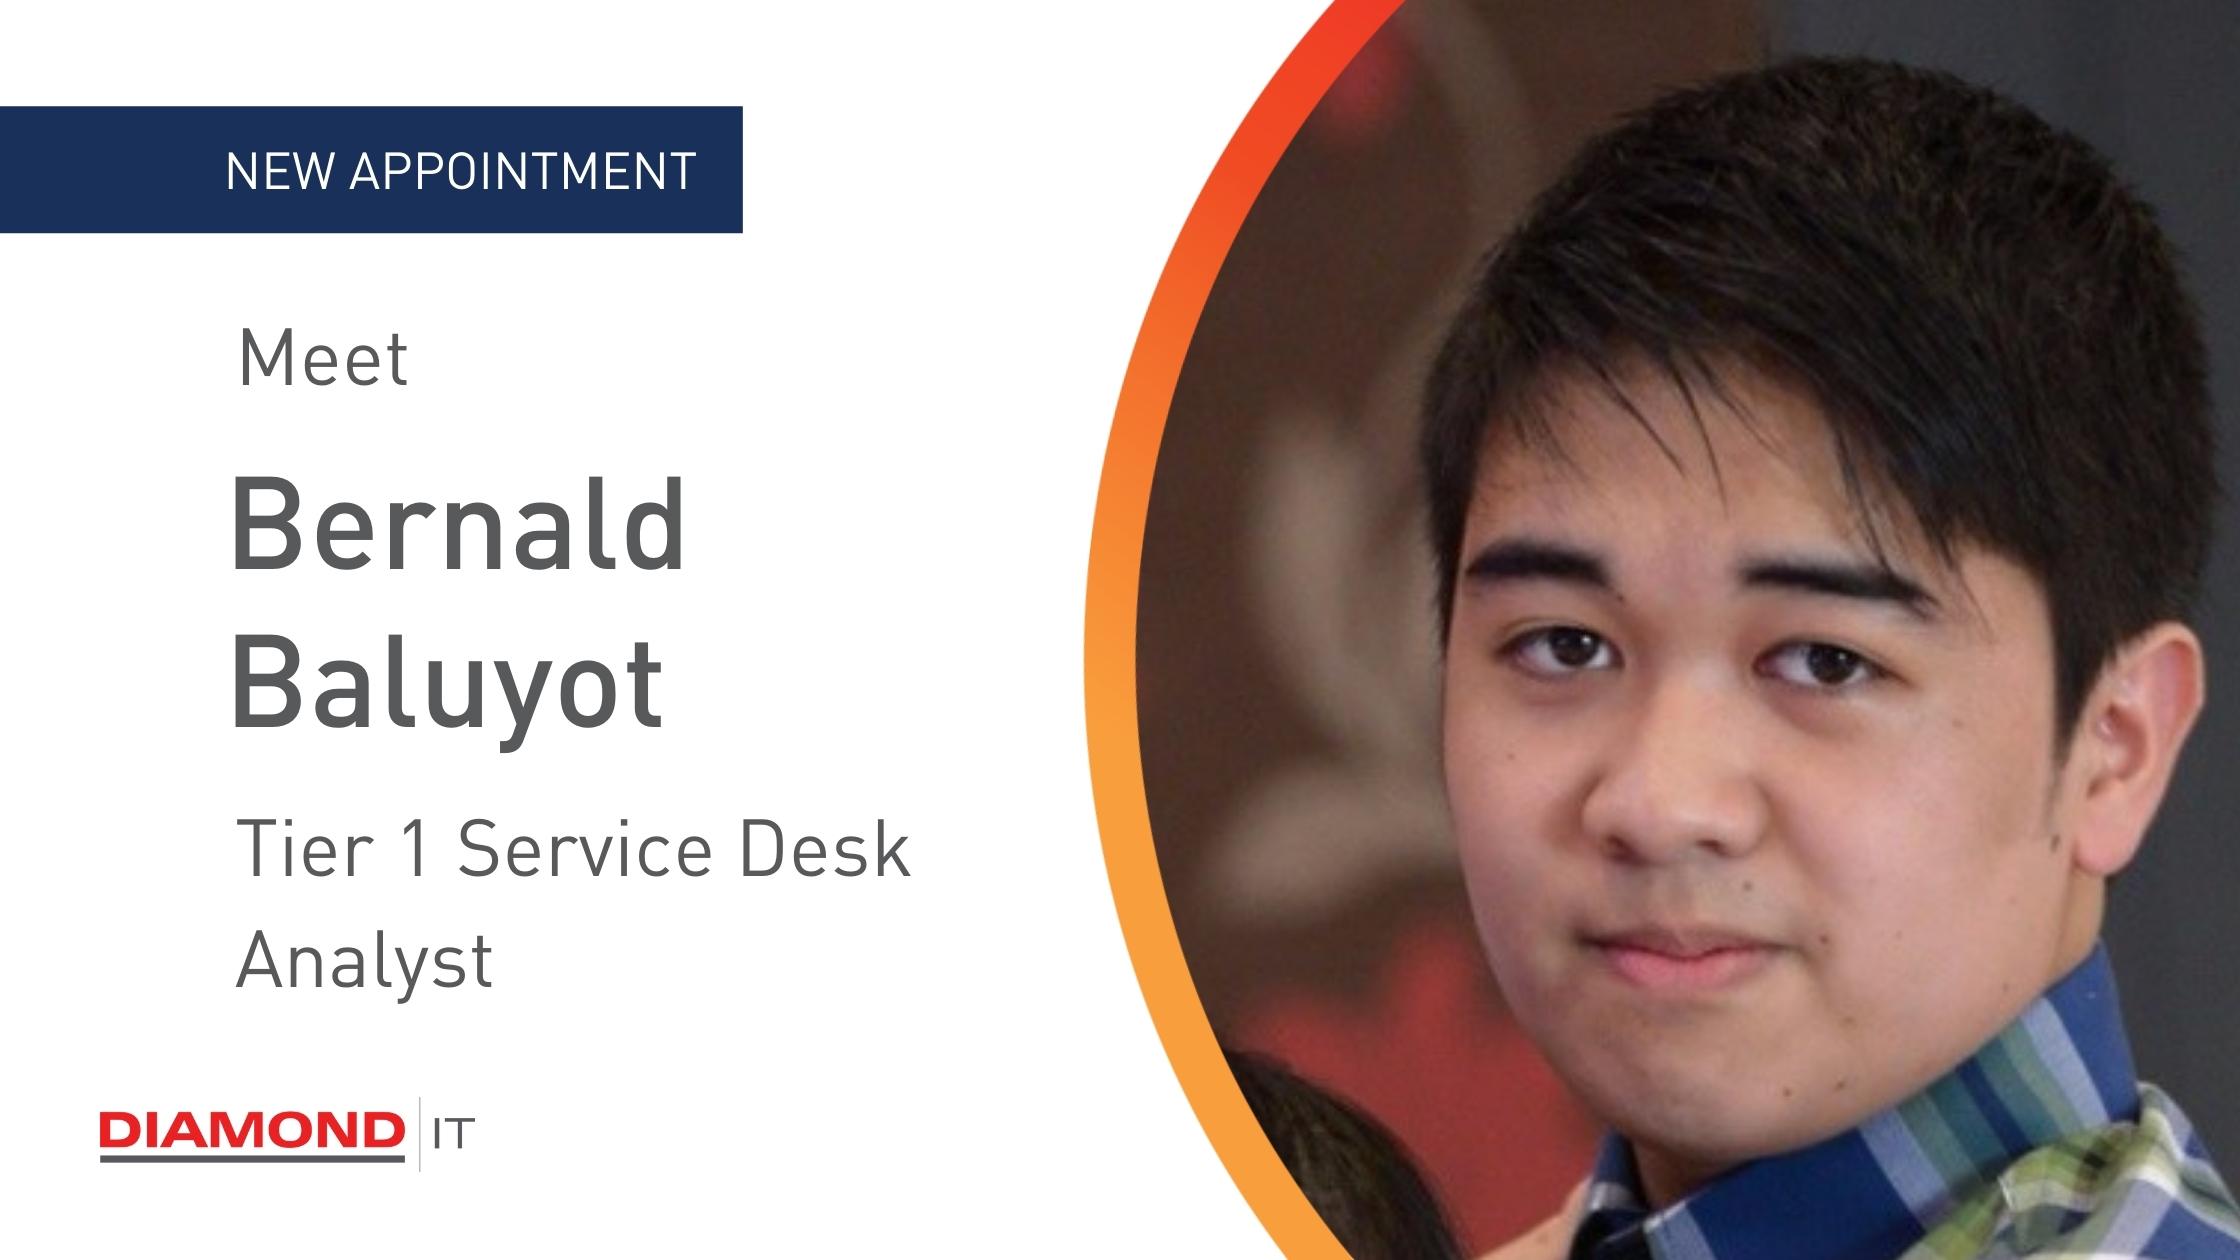 Meet Support Desk Analyst - Bernald Baluyot